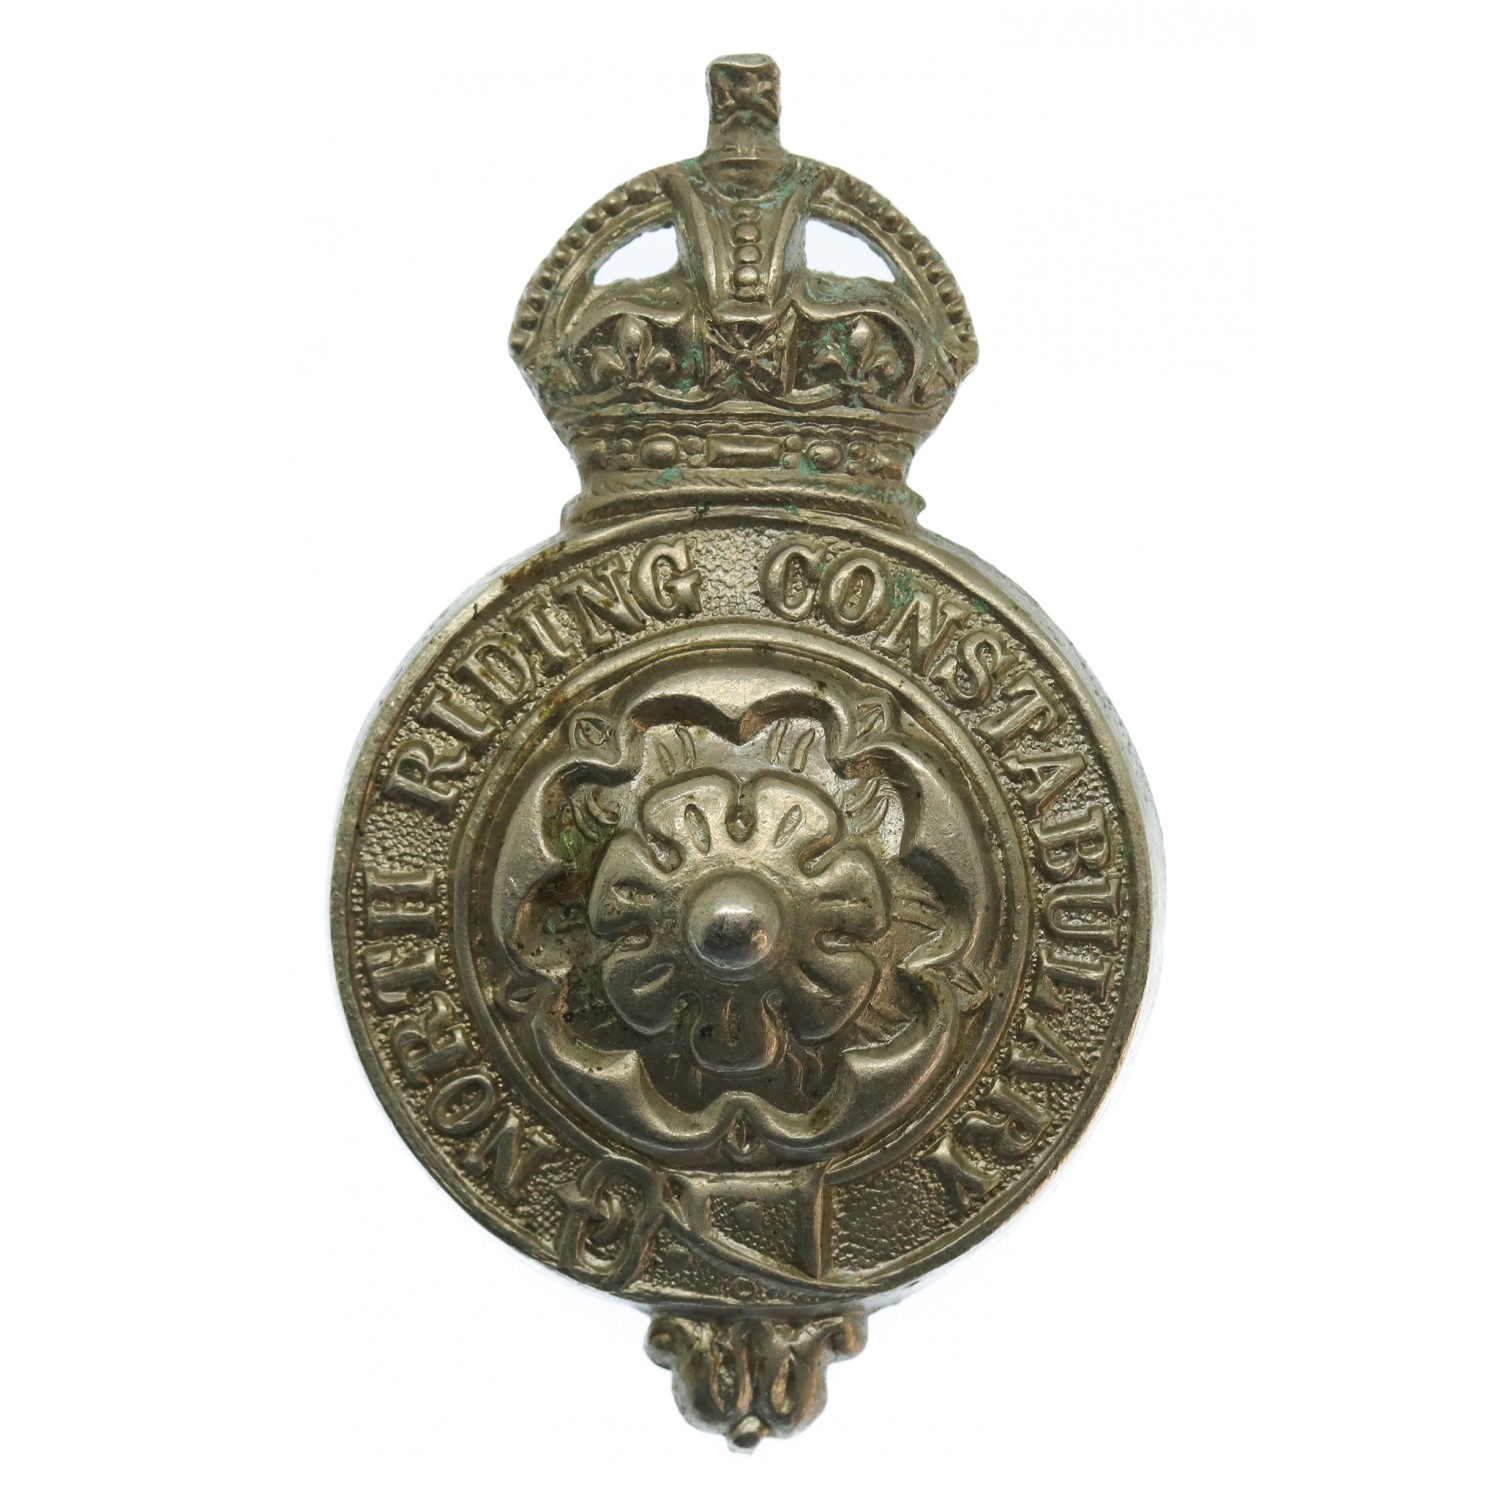 North Riding Constabulary Kepi/Cap Badge - King's Crown